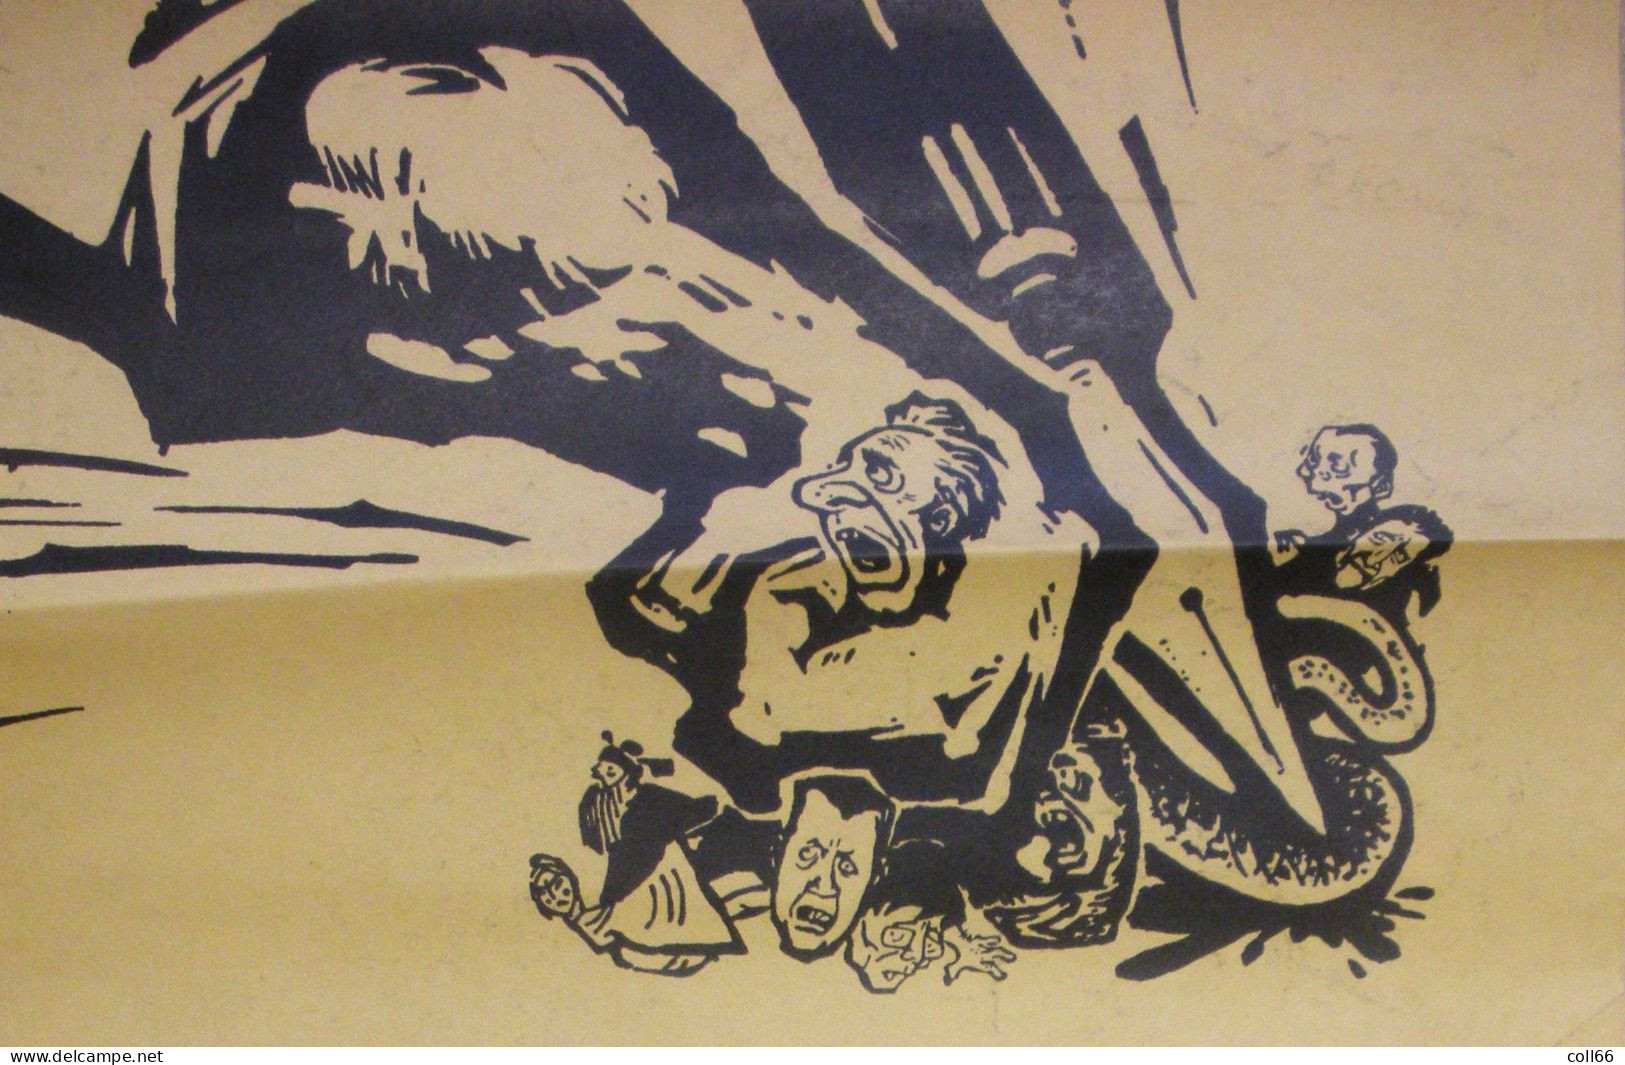 Affiche Propagande Communiste Chine Mao Anti-USA Serpent Impérialisme  51.5x76 Cm Port Franco Suivii - Documentos Históricos